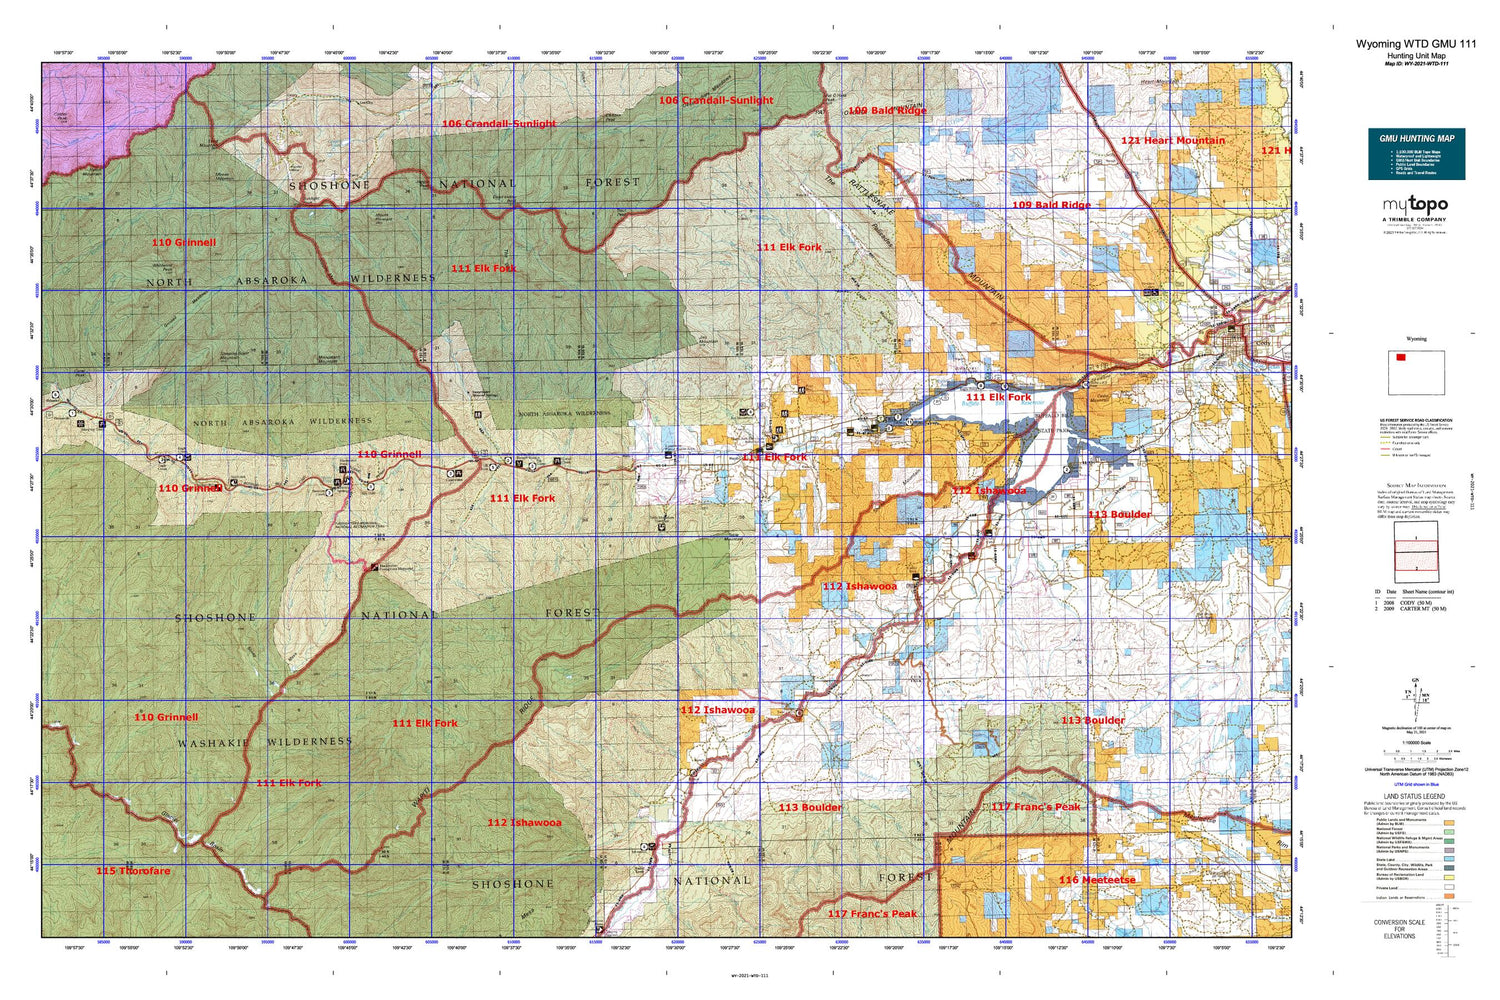 Wyoming Whitetail Deer GMU 111 Map Image